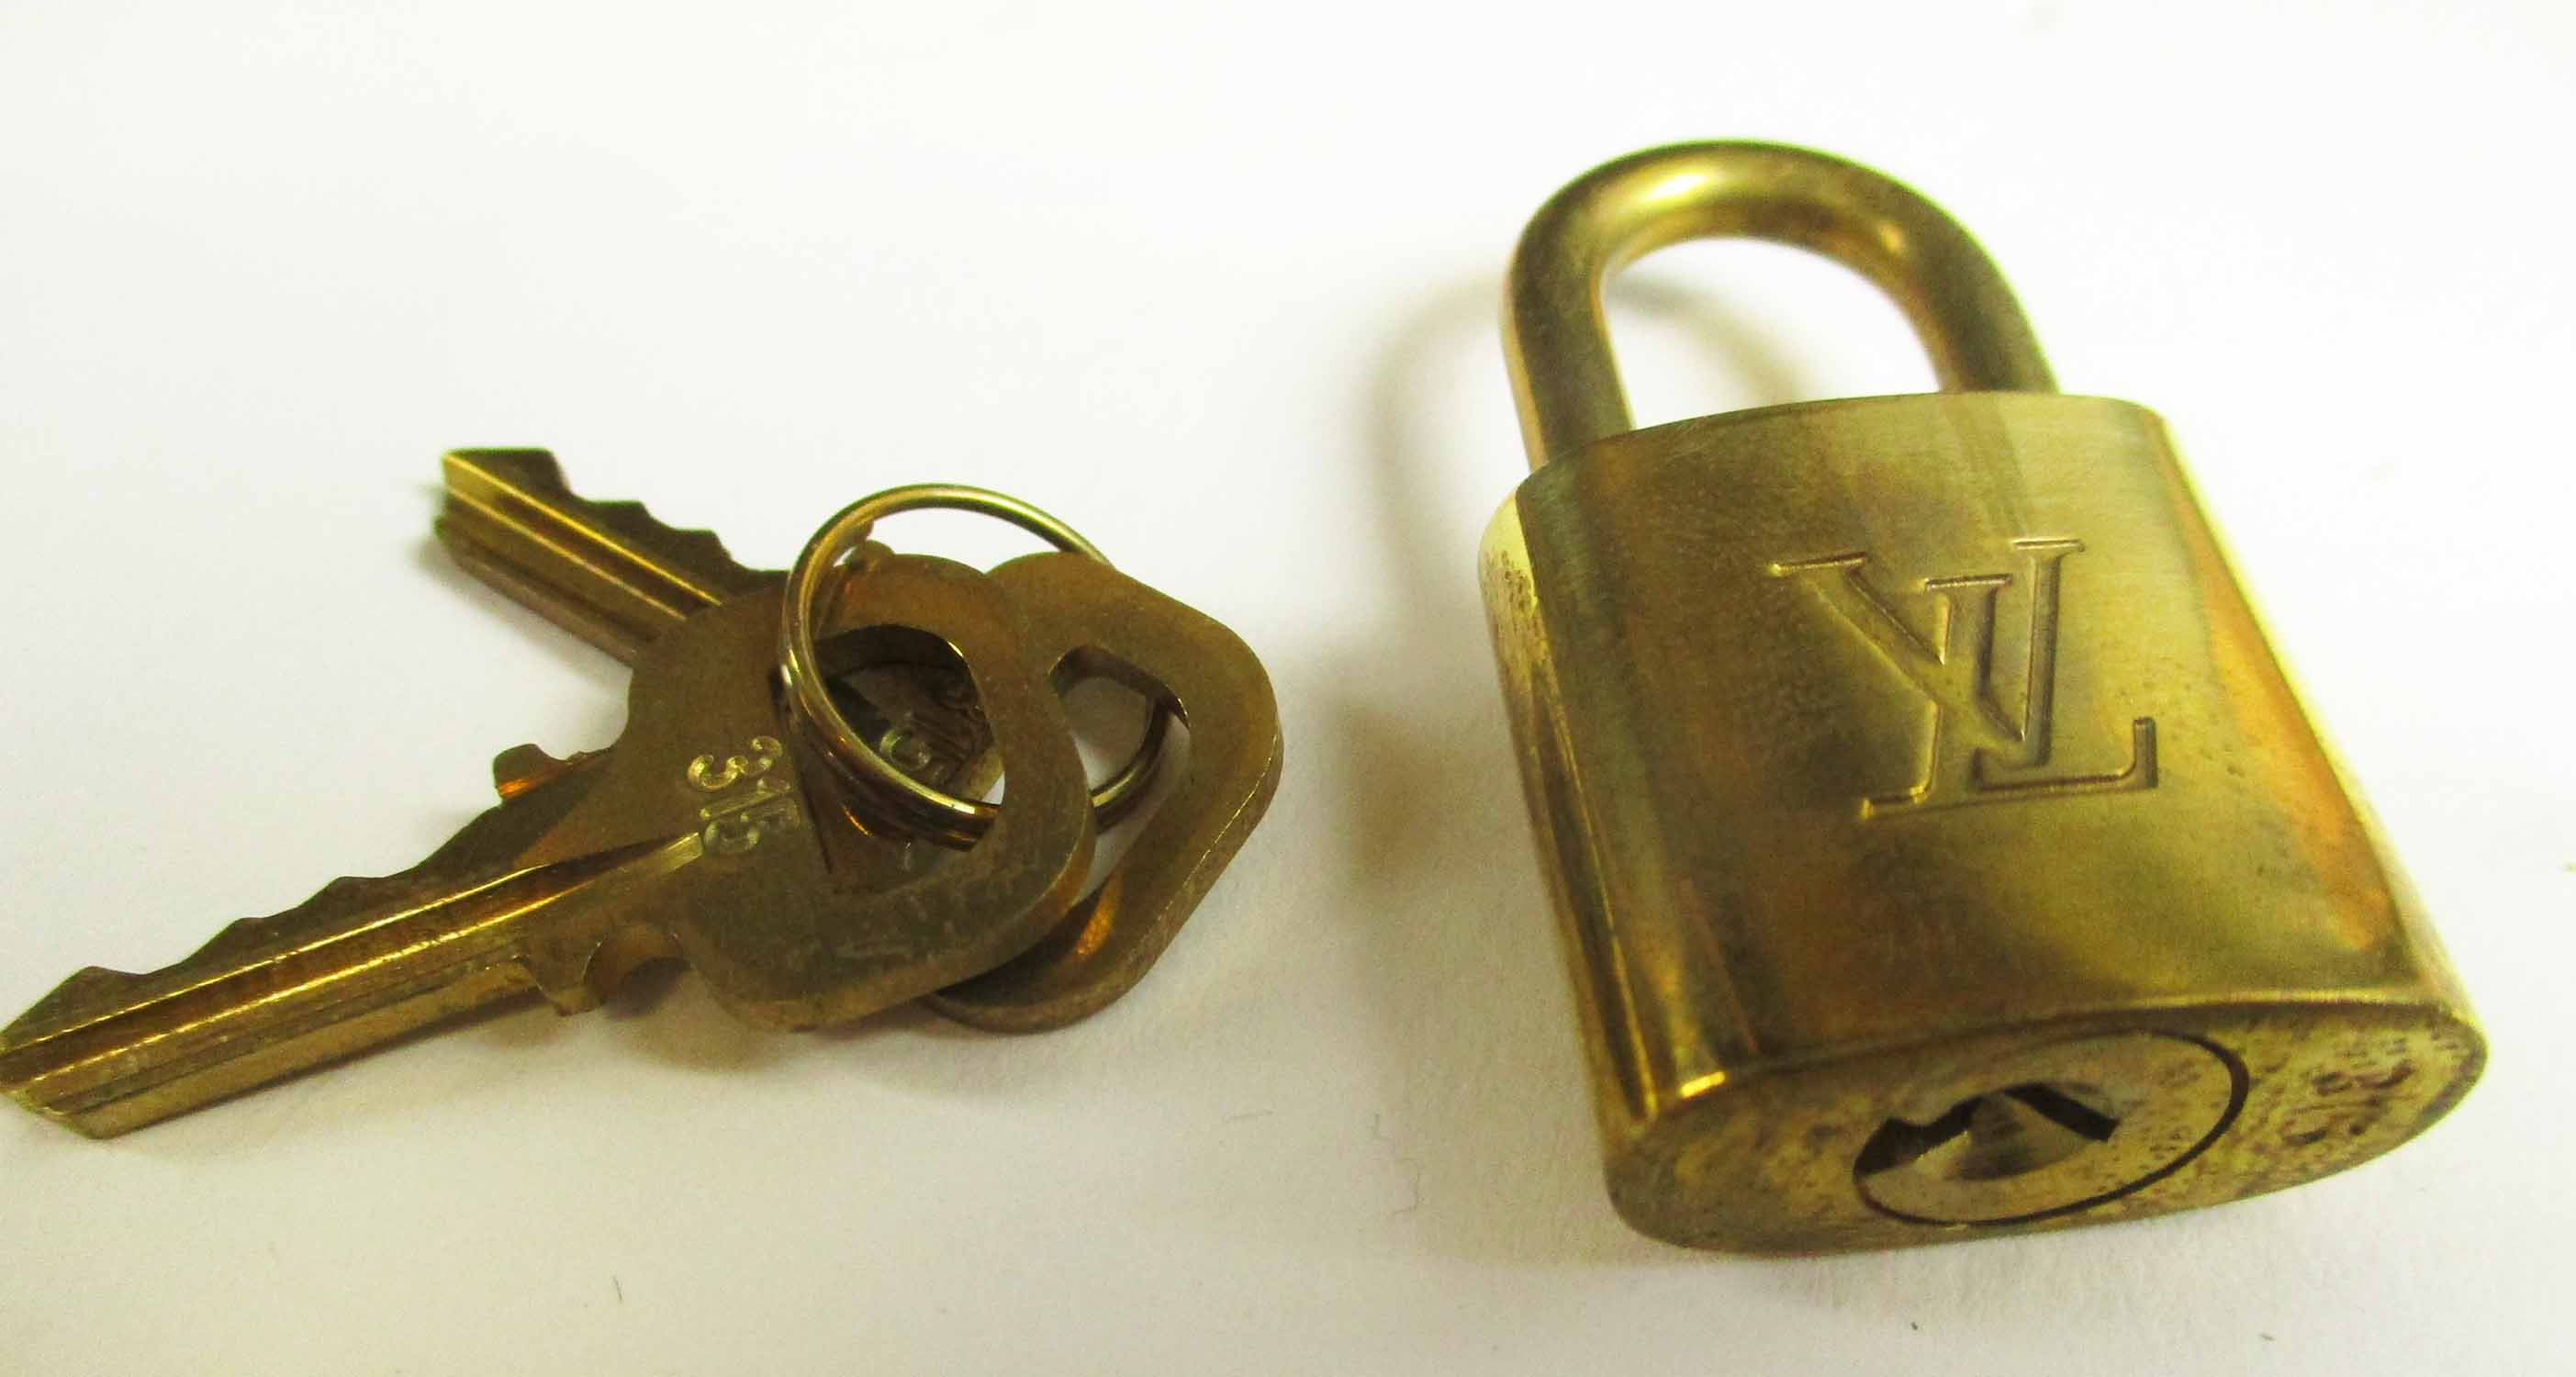 LOUIS VUITTON 'SIRIUS 70' MONOGRAM SUITCASE, plus padlock and keys, approx  72cm L, 50cm H. (unused)